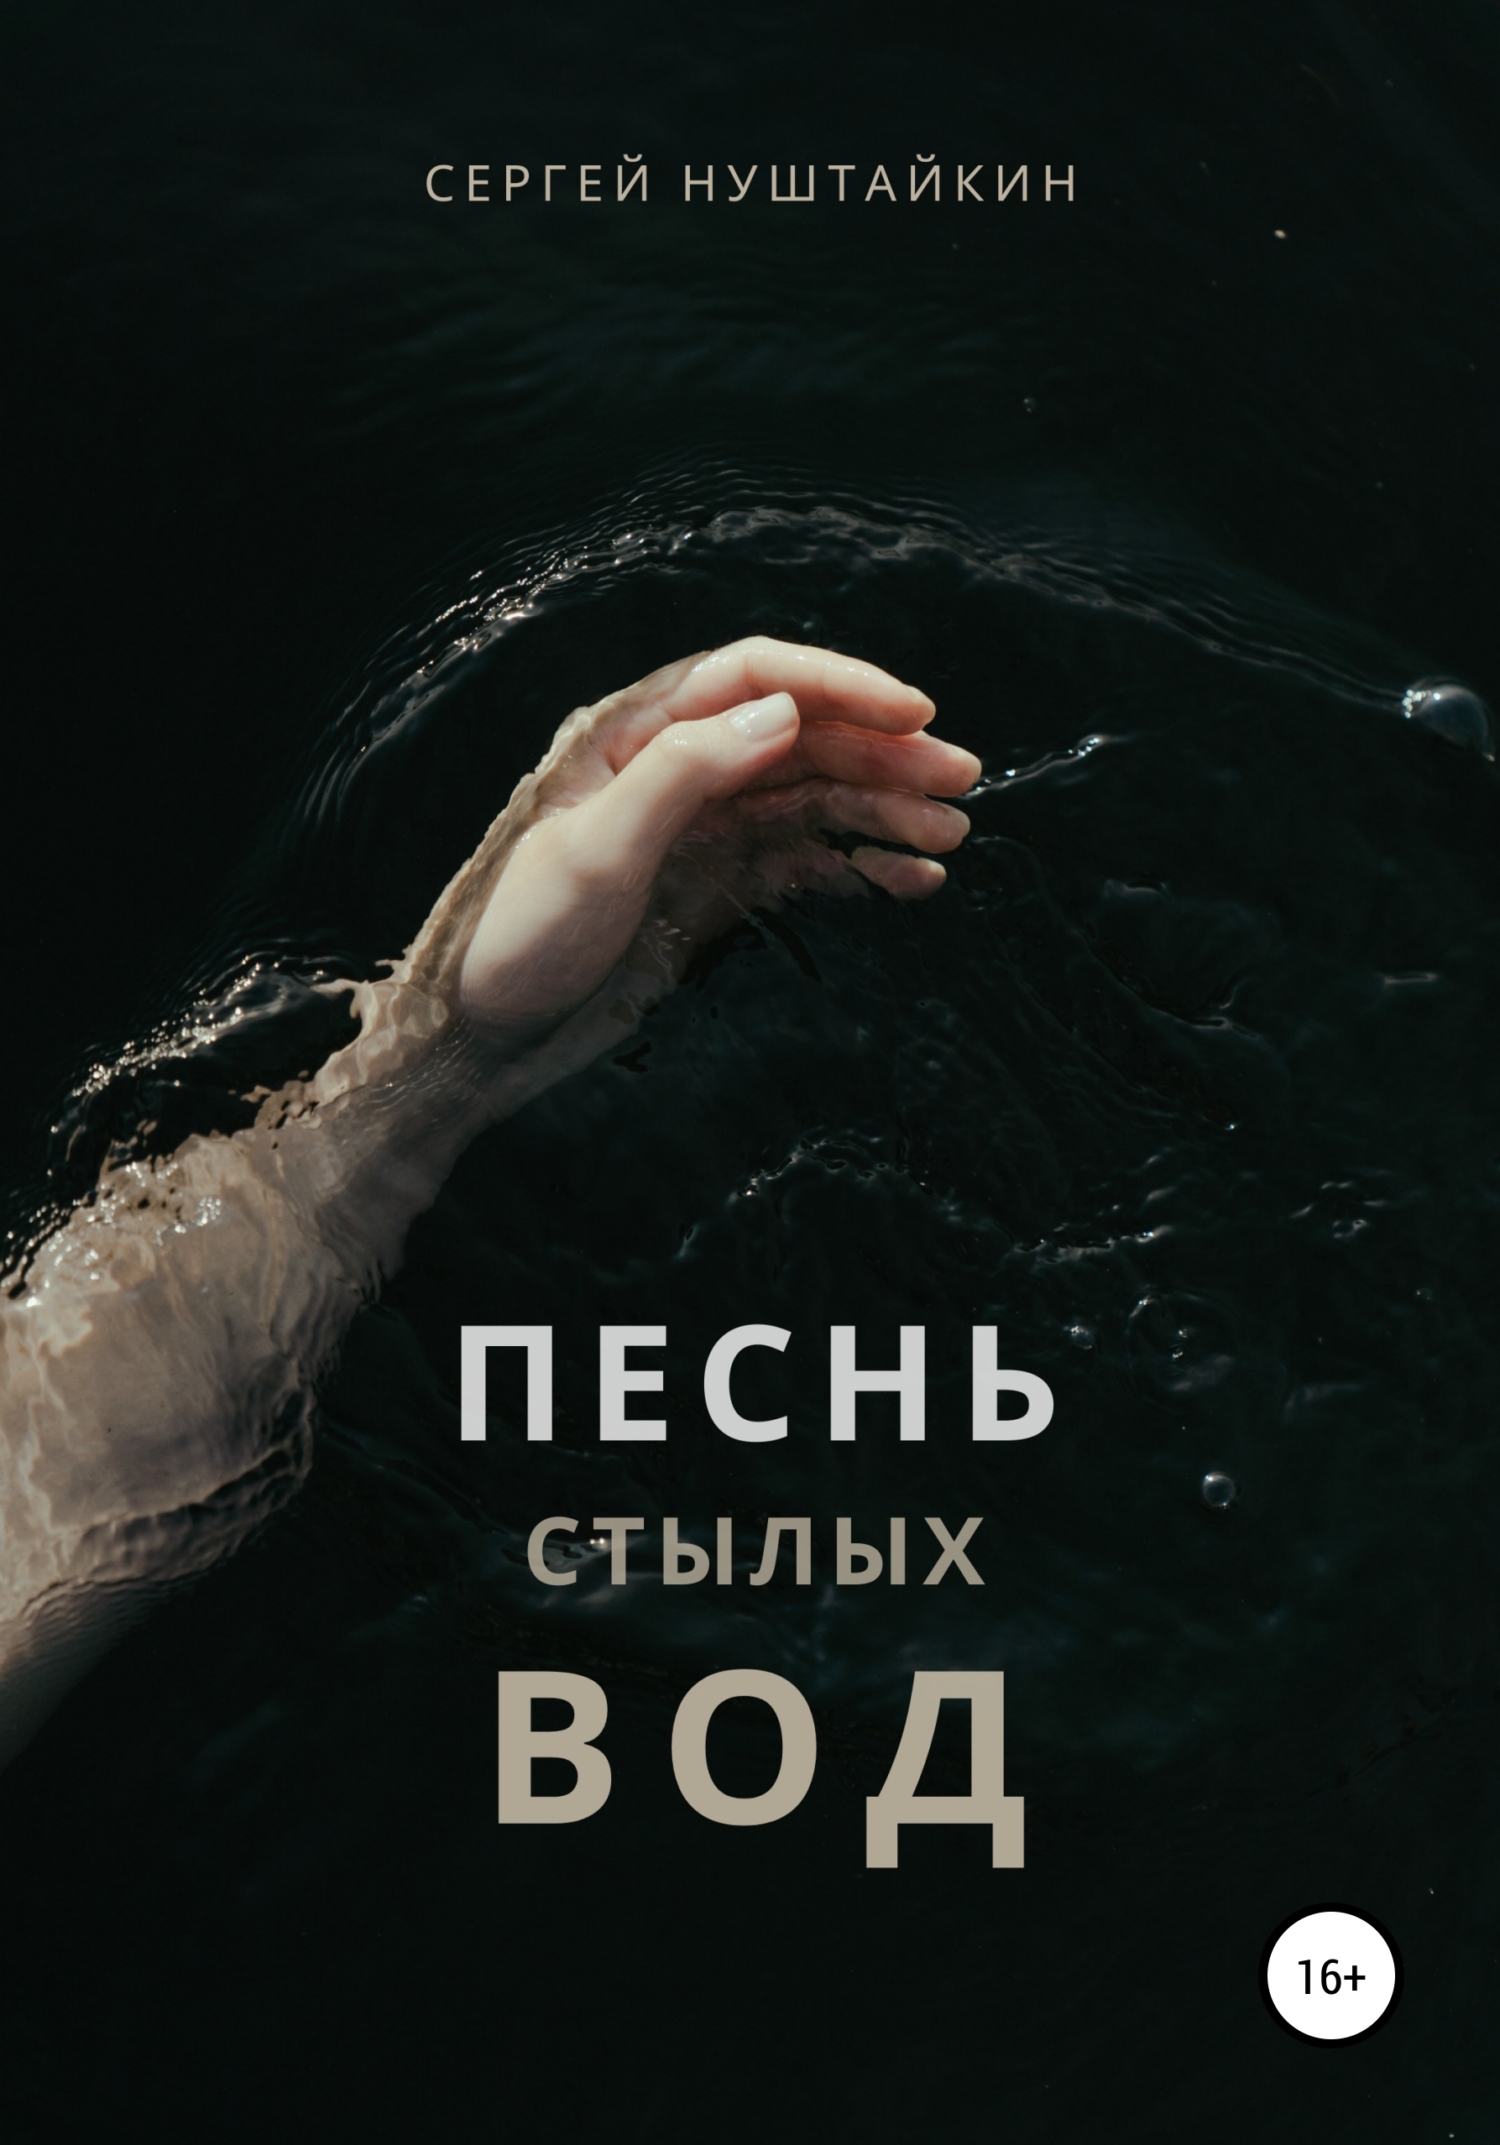 Песнь стылых вод - Сергей Нуштайкин